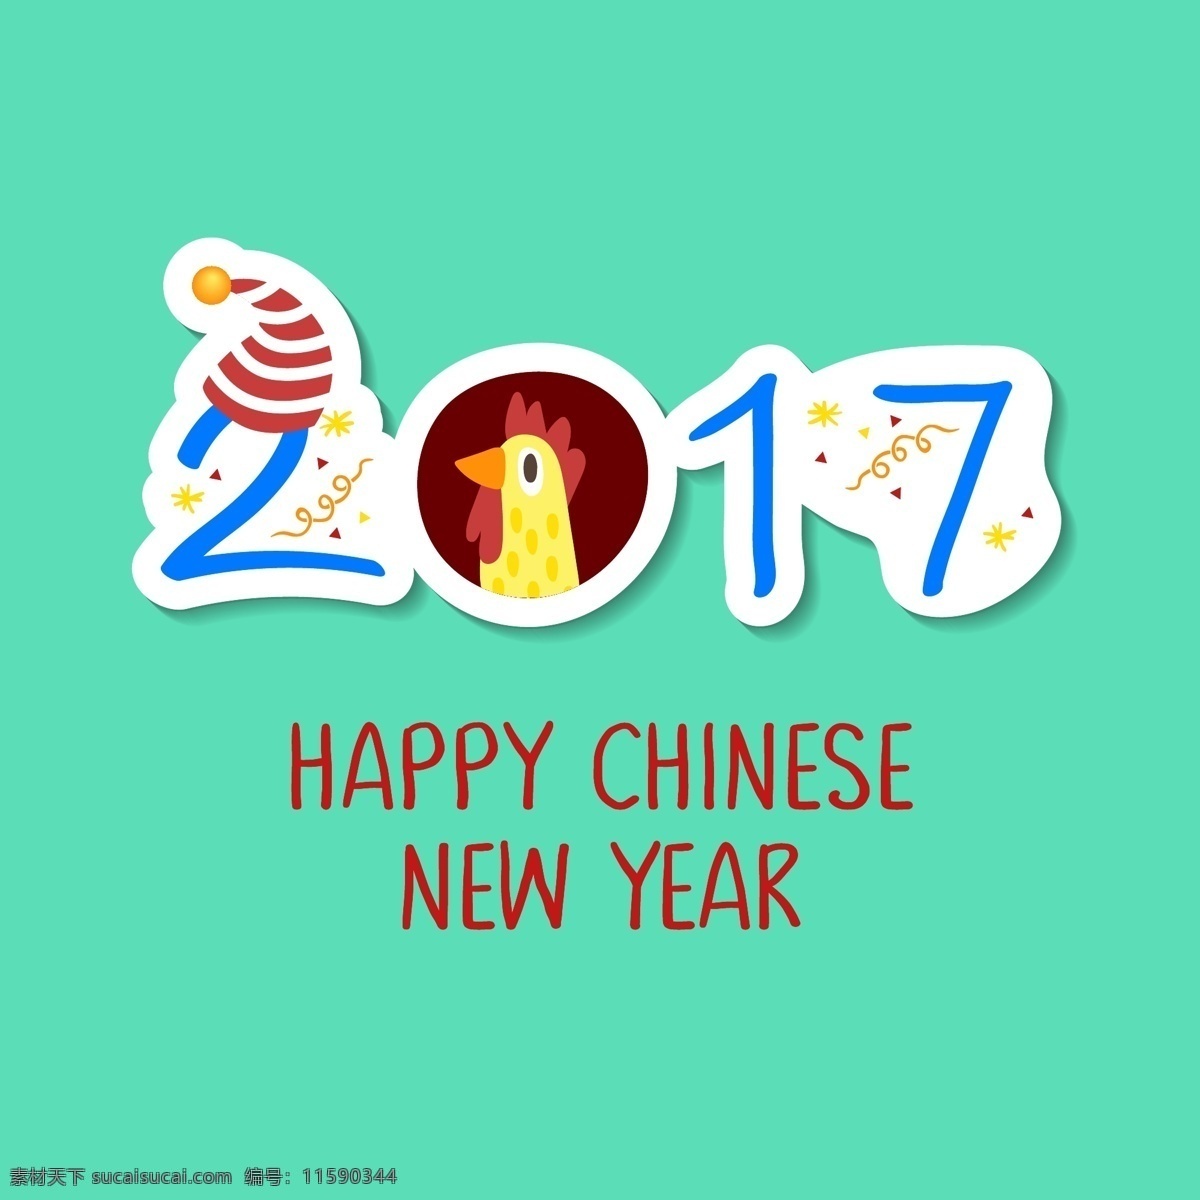 可爱的中国 新年 背景 冬天 新的一年 2017 人 动物 中国 庆祝 快乐 节日 事件 的背景下 公鸡 十二月 东方 年 亚洲